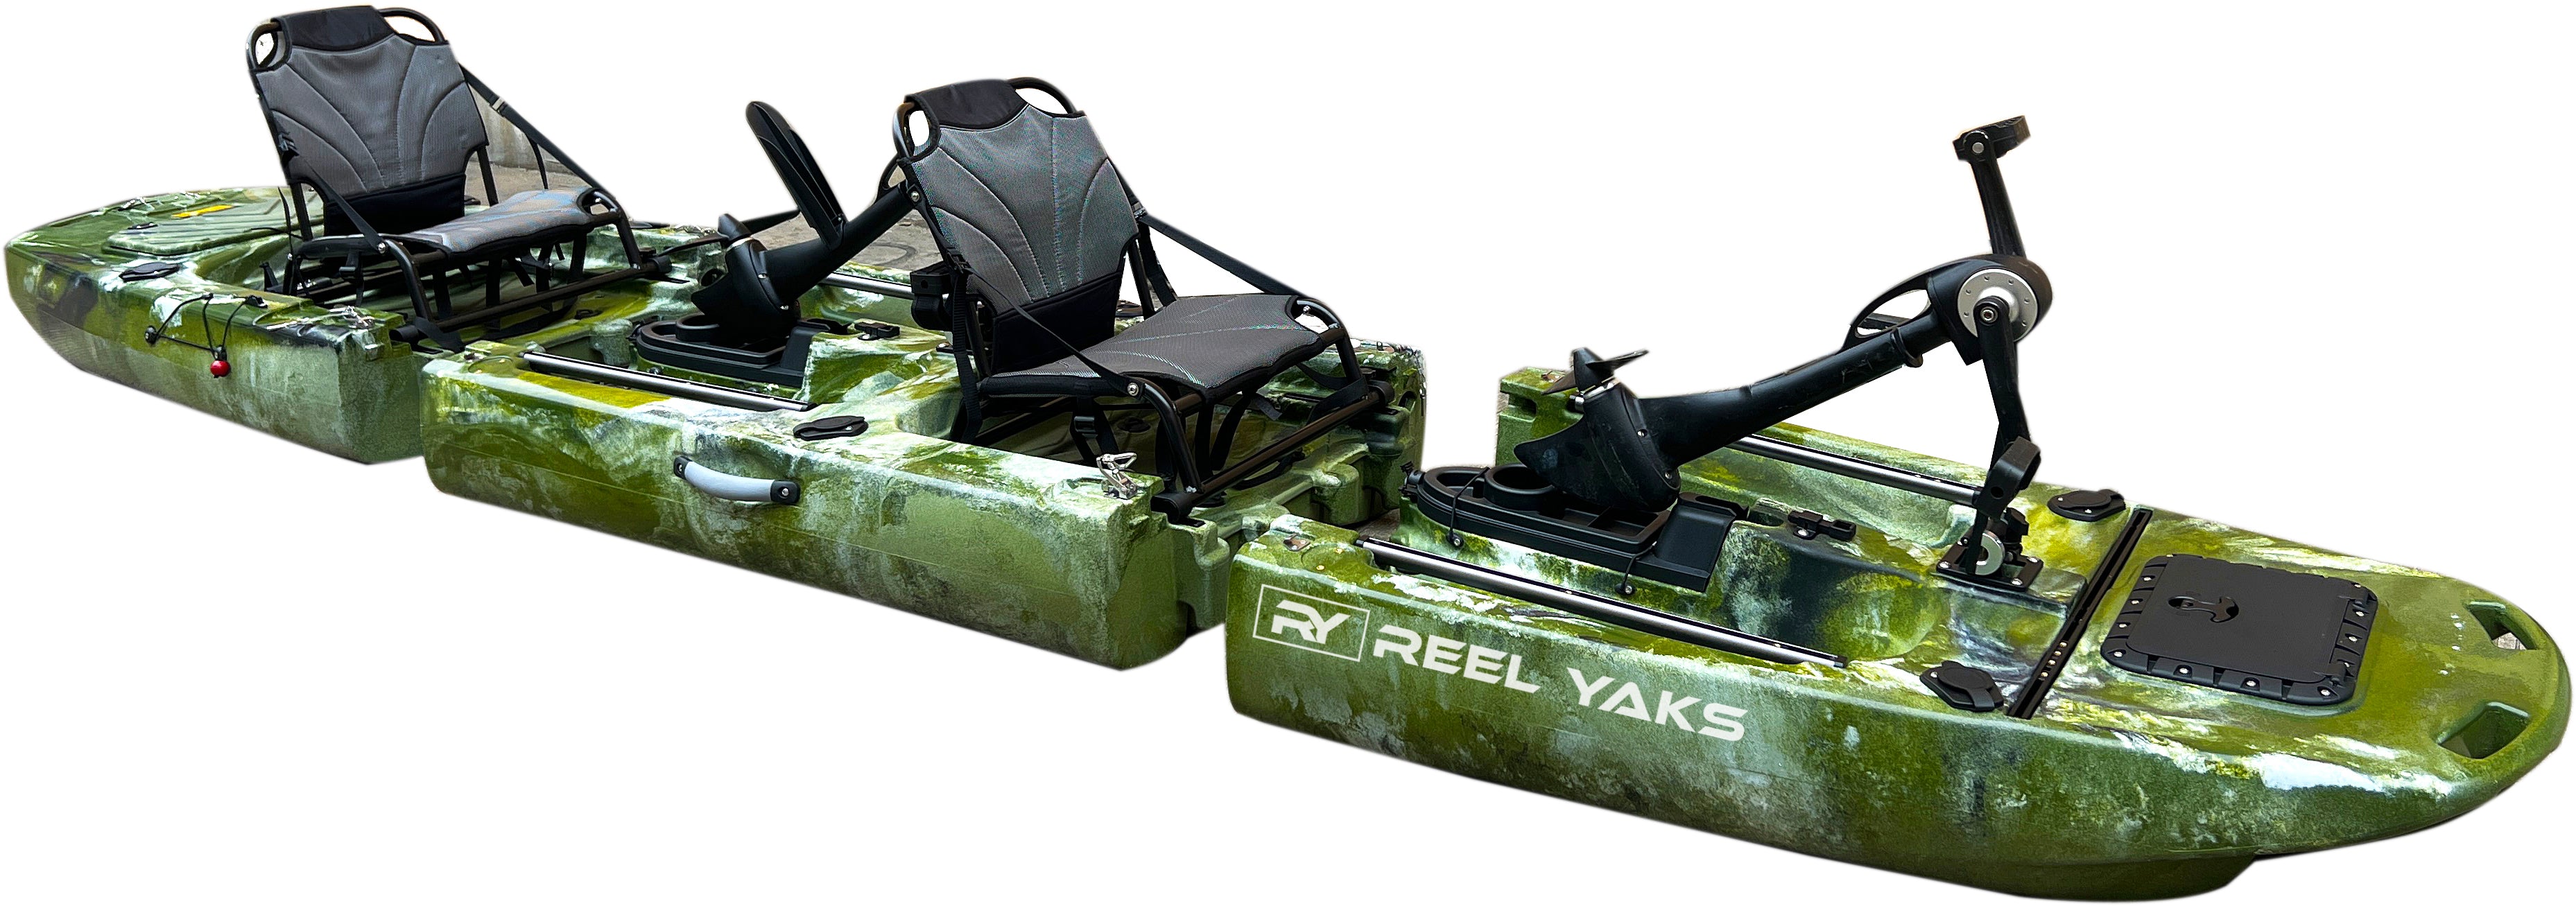 12.5ft Tandem or Solo Modular Raptor Pedal Fishing Kayak